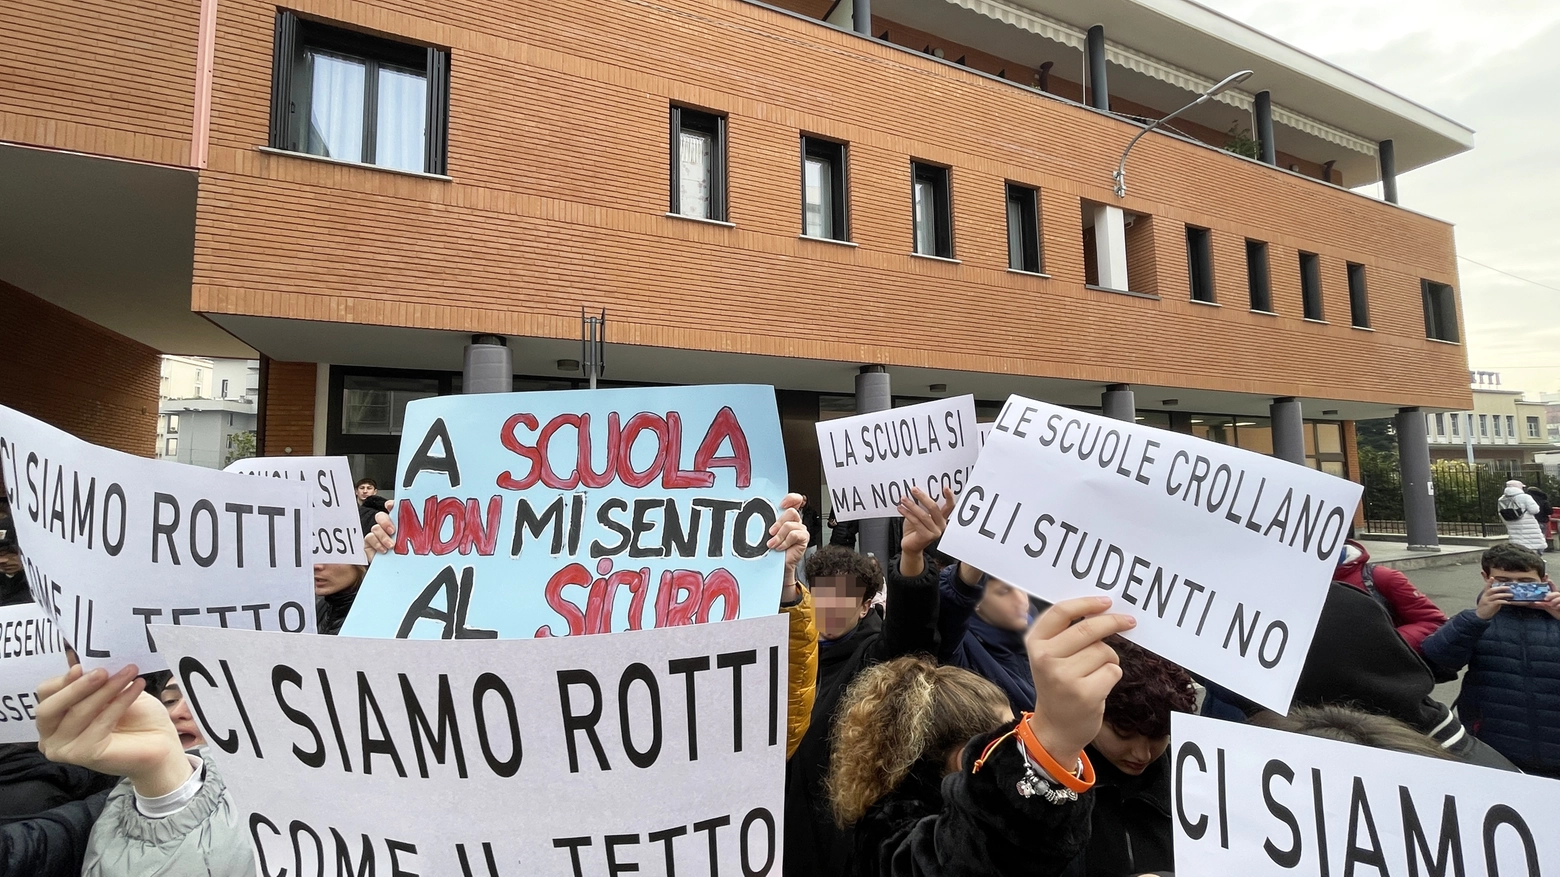 GALLARATE VARESE PROTESTA STUDENTI ISTITUTO FALCONE DI GALLARATE